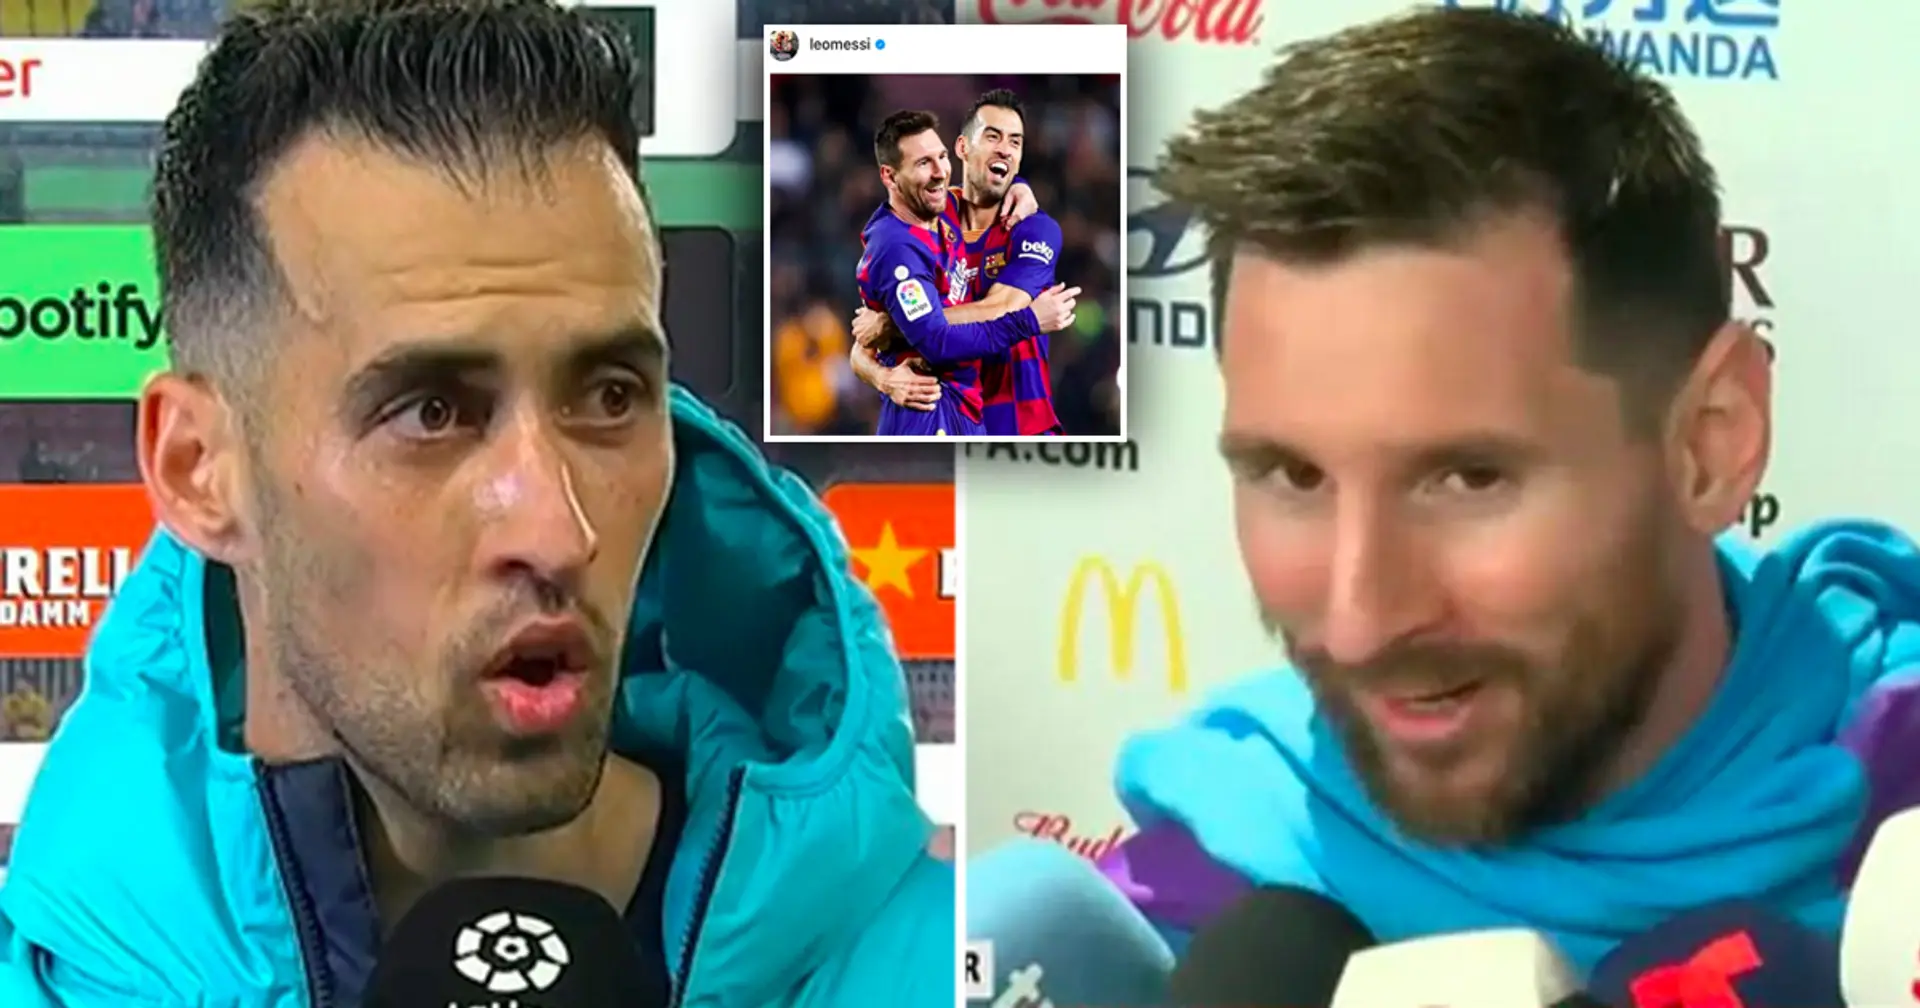 '5 como jugador, 10 como persona': Messi envía un emotivo mensaje de despedida a Busquets